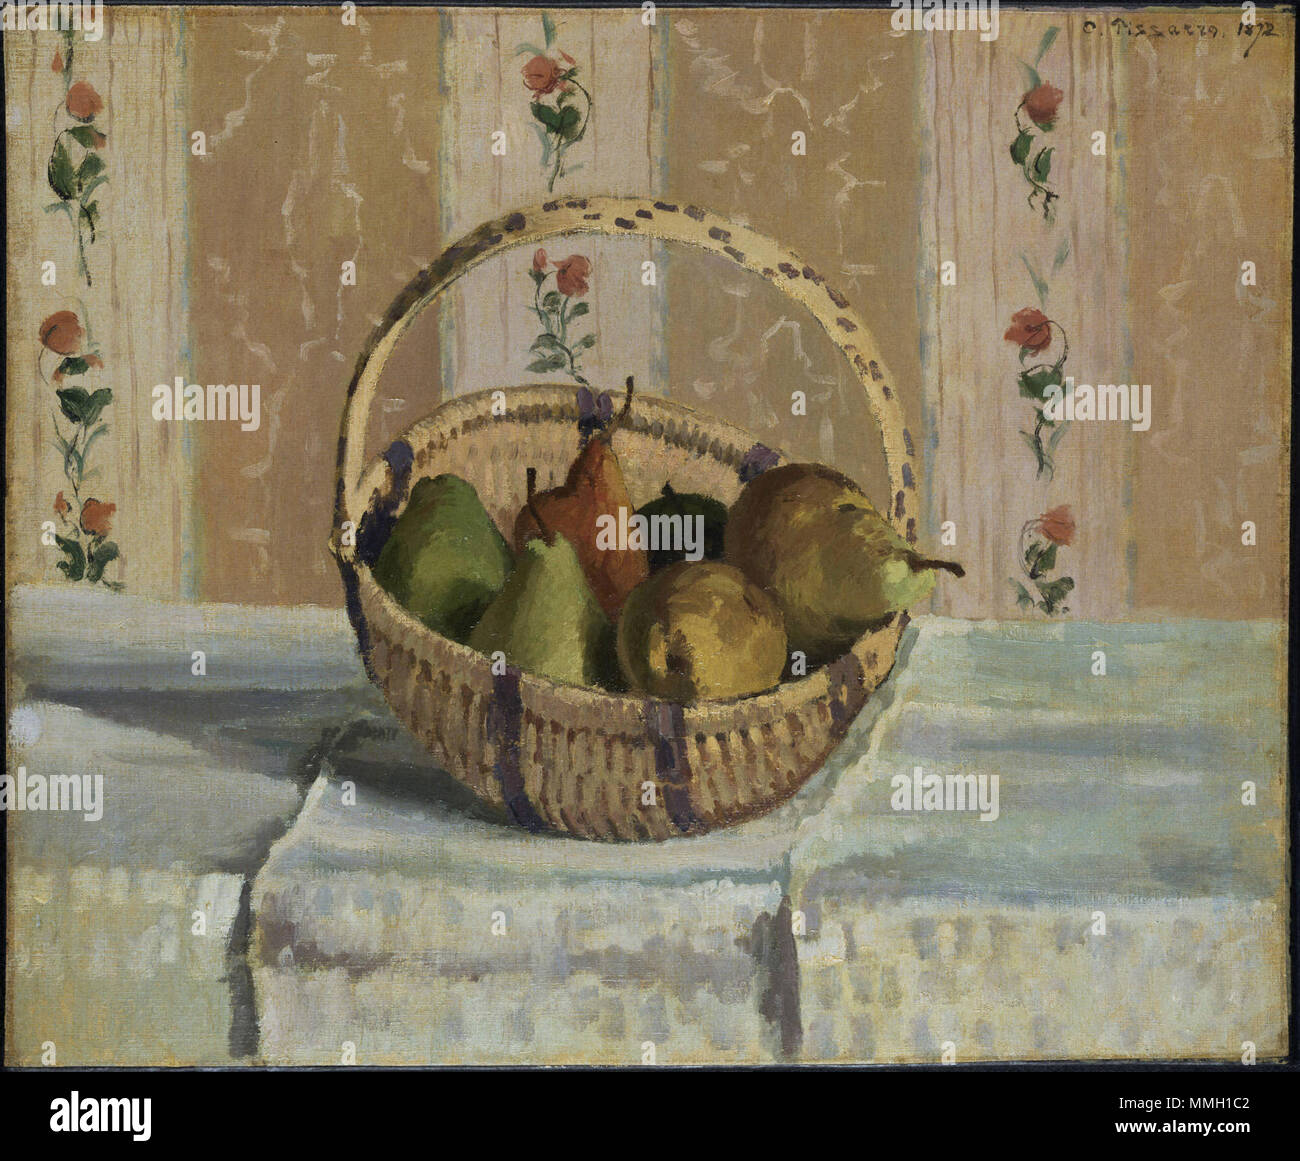 . Inglese: Camille Pissarro (1830-1903) era uno dei più influenti artisti impressionisti e un importante maestro e mentore di artisti come Paul Cézanne e Paul Gauguin. Egli ha la distinzione di essere l'unico pittore nel gruppo per presentare a tutti gli otto mostre impressionista, svoltasi tra il 1874 e il 1886. Pissarro raccomandato per un nuovo modo di dipingere che si ribellarono contro i dettami accademici; egli era anche noto per il suo radicalismo politico. Pissarro nacque a San Tommaso, poi la parte danese delle Isole Vergini da padre francese da un portoghese ebrei sefarditi in famiglia e una m Foto Stock